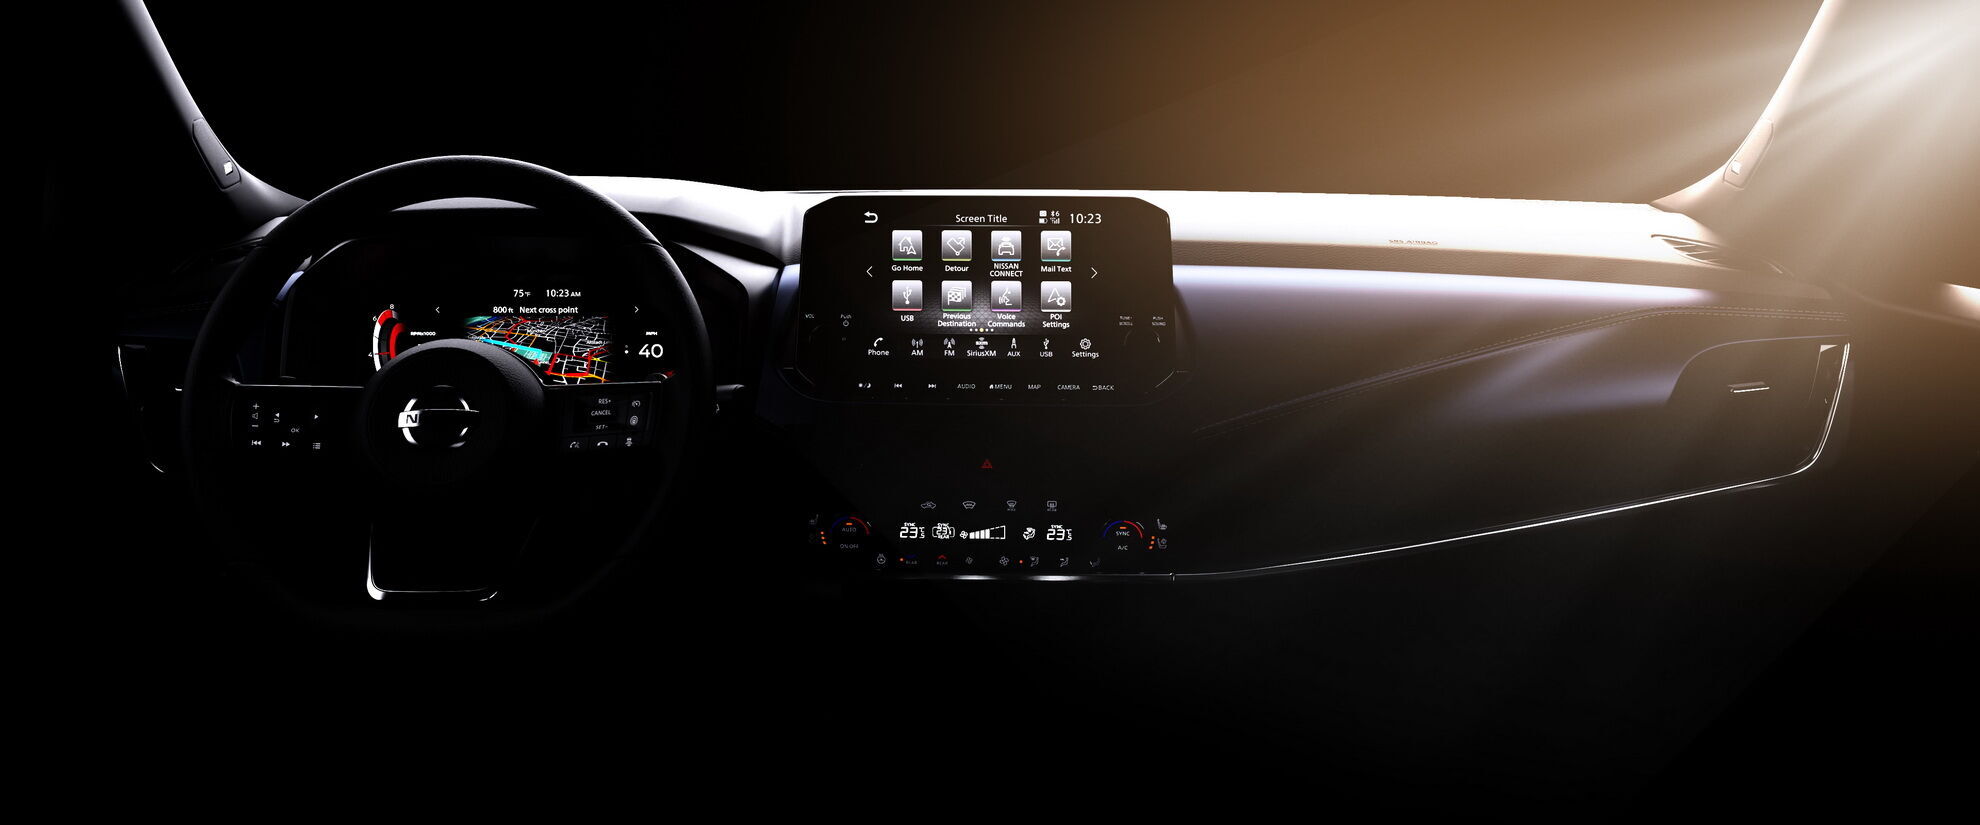 Nissan Qashqai получил цифровой кокпит с 12,3-дюймовой шкалой приборов и 9-дюймовым экраном информационно-развлекательной системы